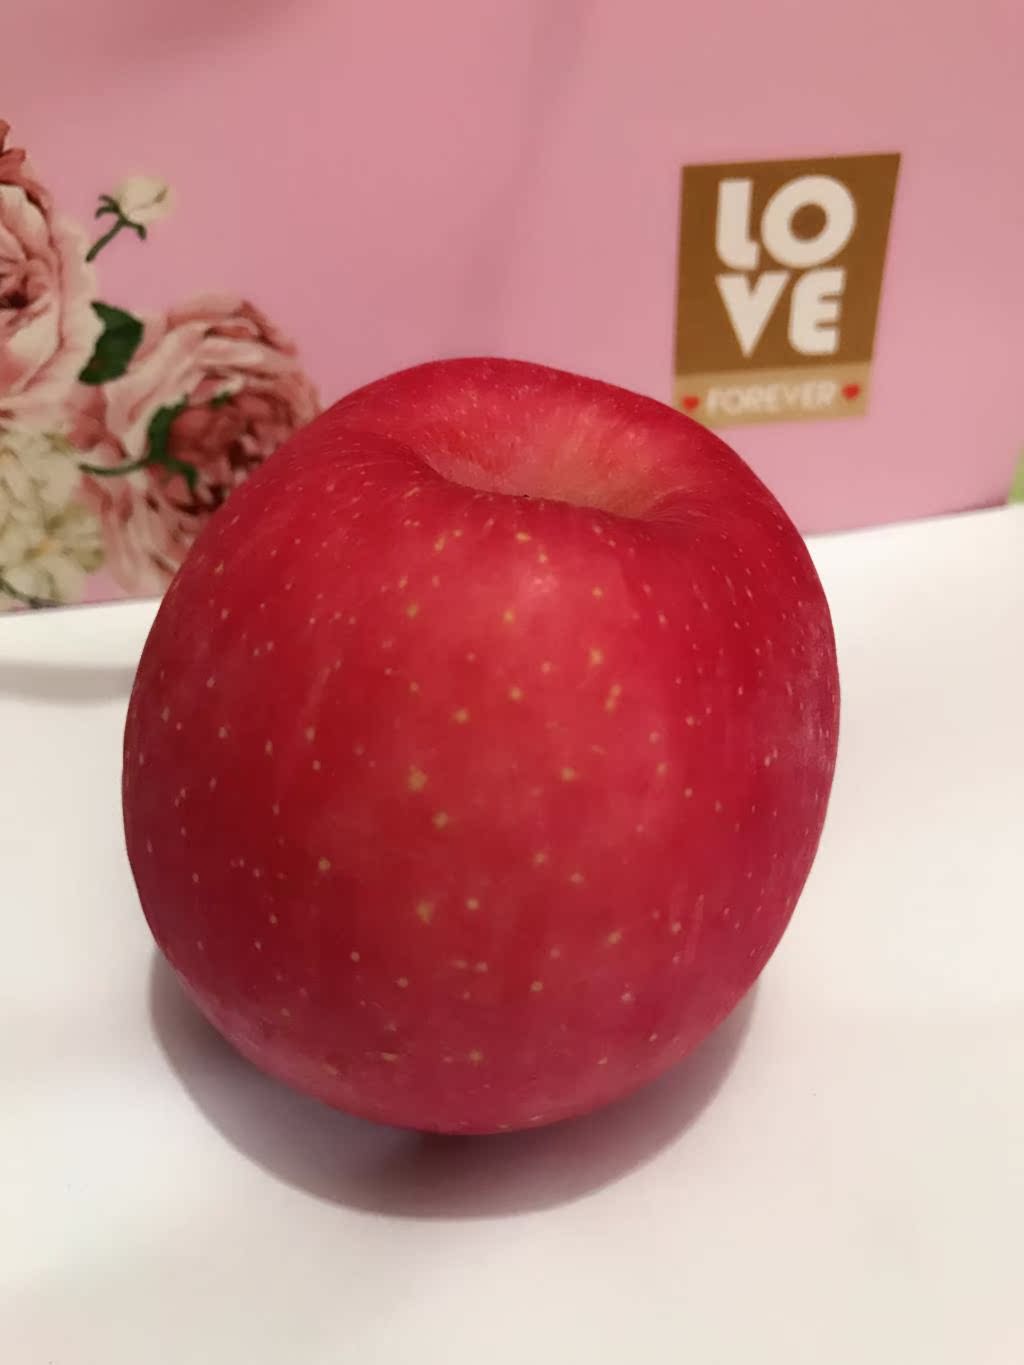 爱尚水果正宗蓬莱苹果山东优质红富士苹果全红冰糖心苹果1斤